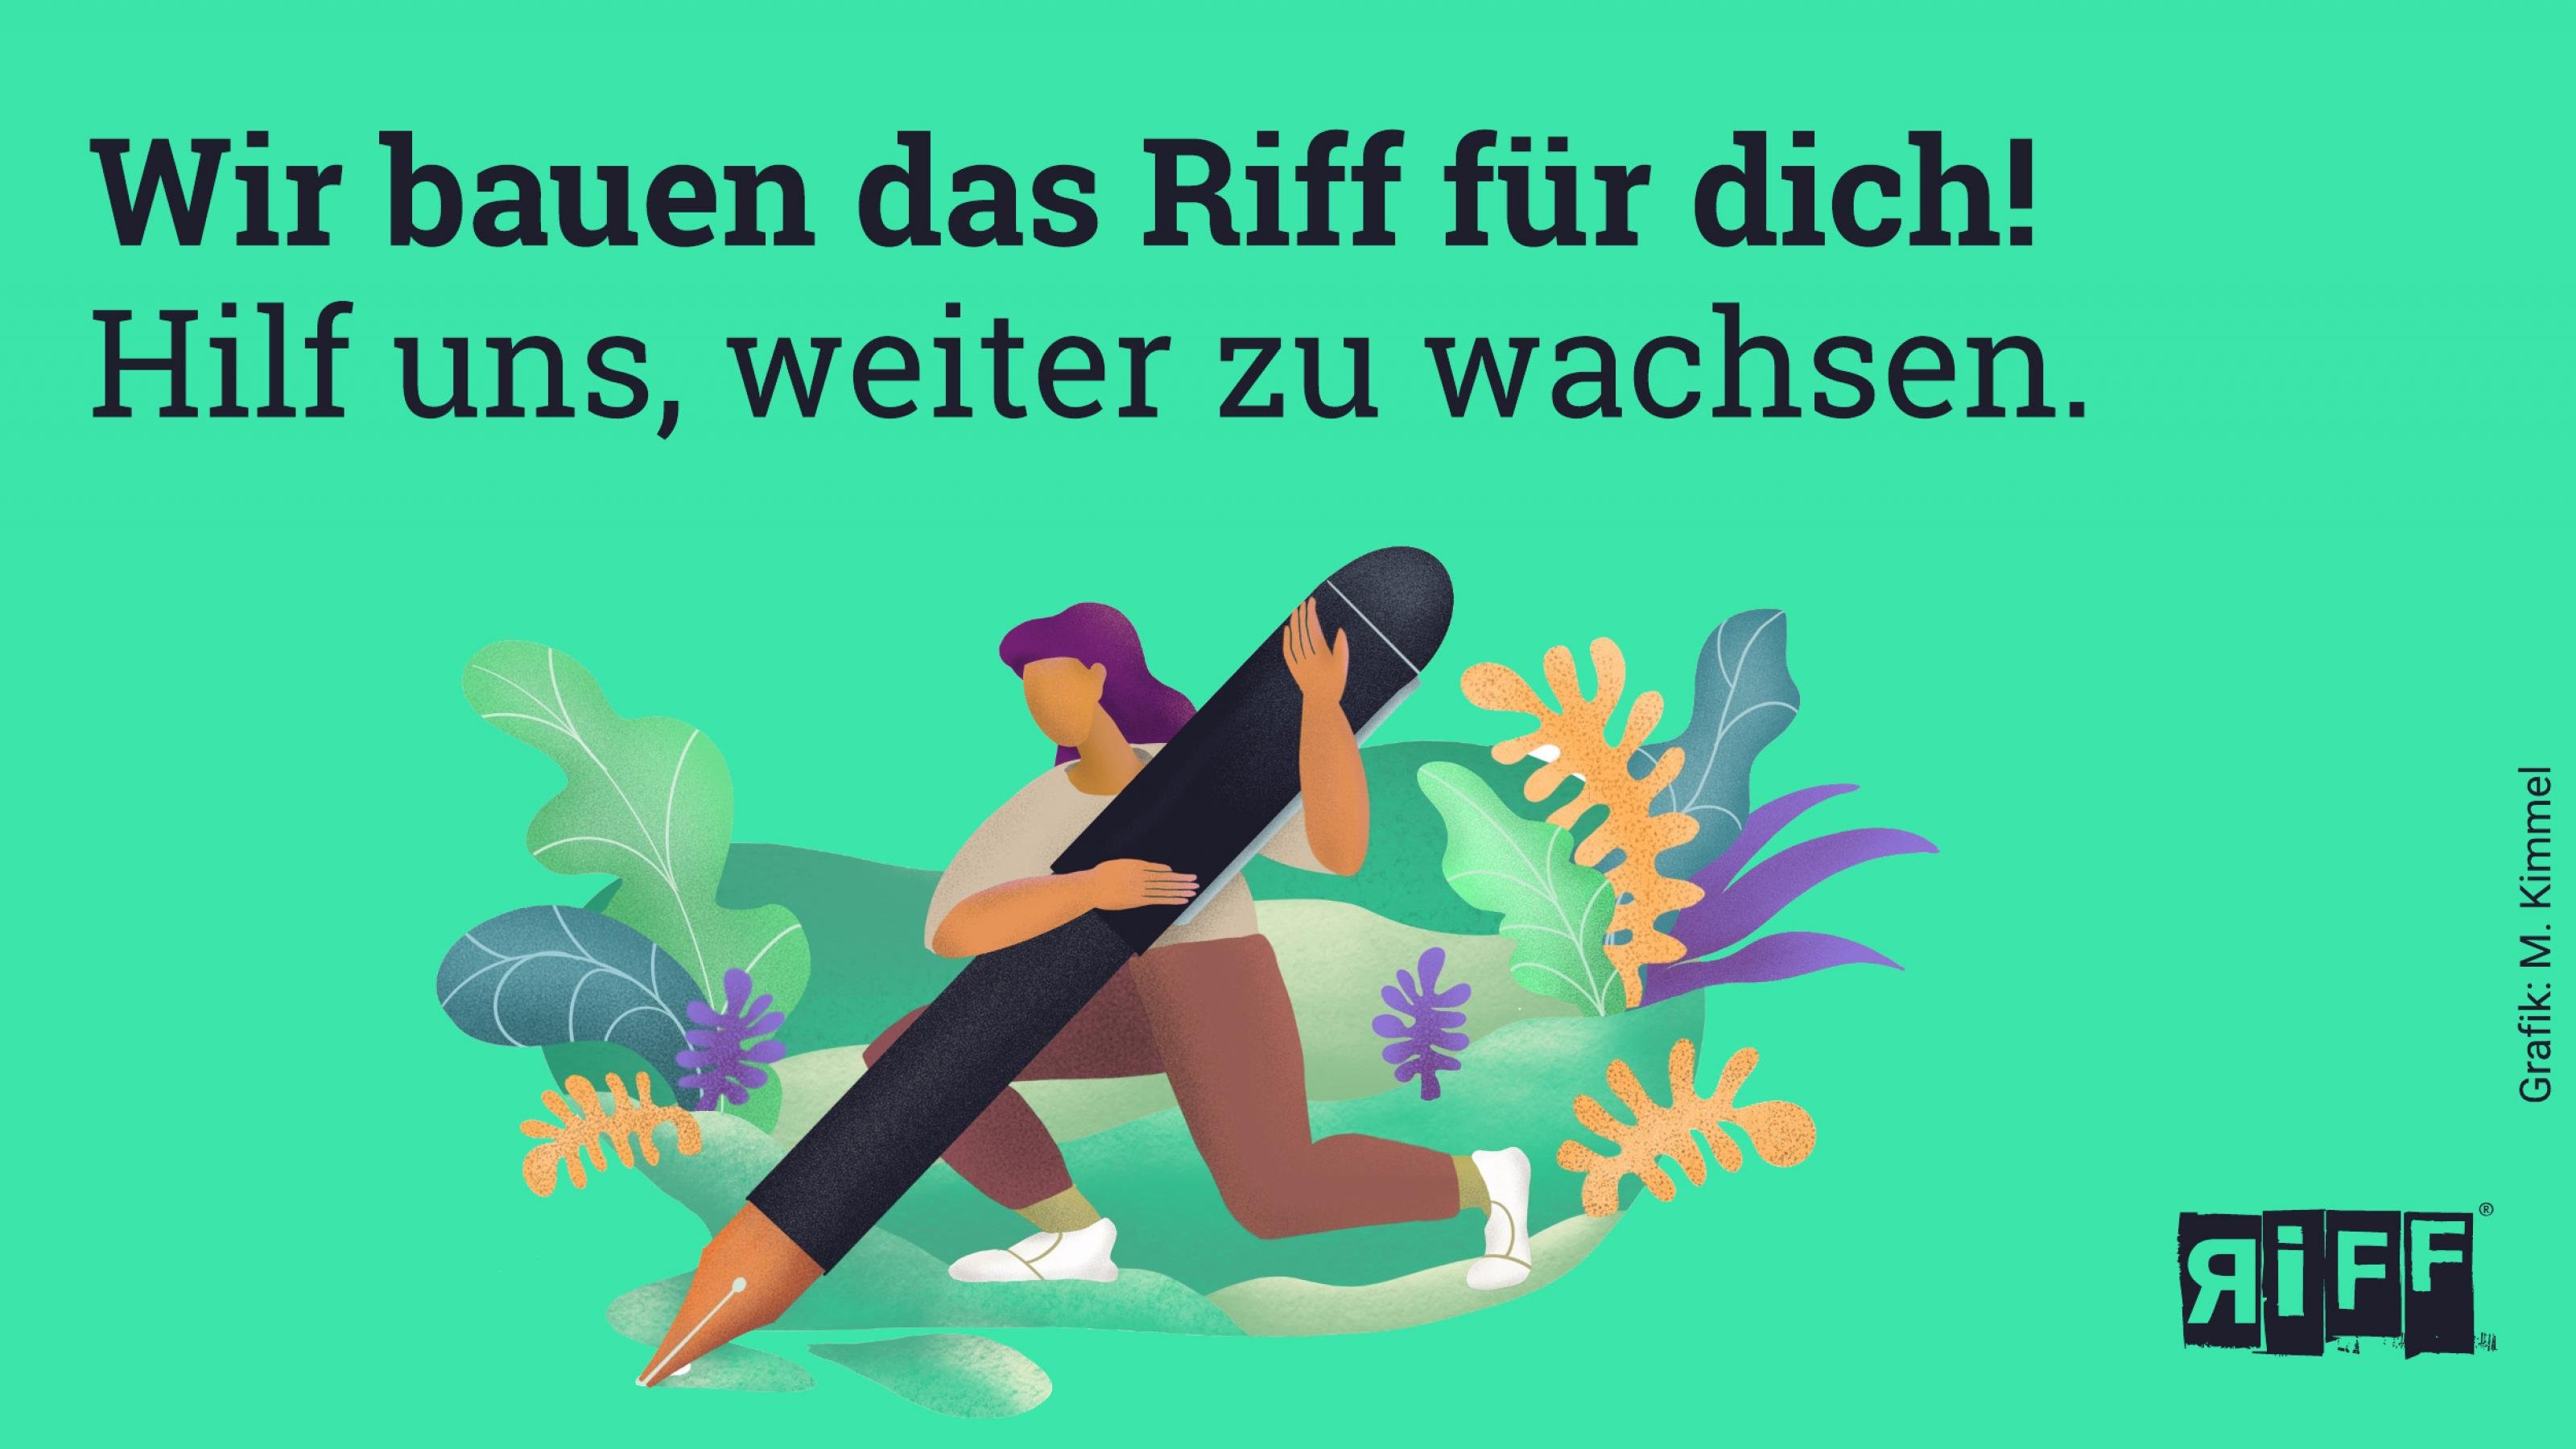 Grafik: Eine Frau hält einen mensch-hohen Füllfederhalter. Dazu der Text: „Wir bauen das Riff für dich. Hilf uns, weiter zu wachsen!“